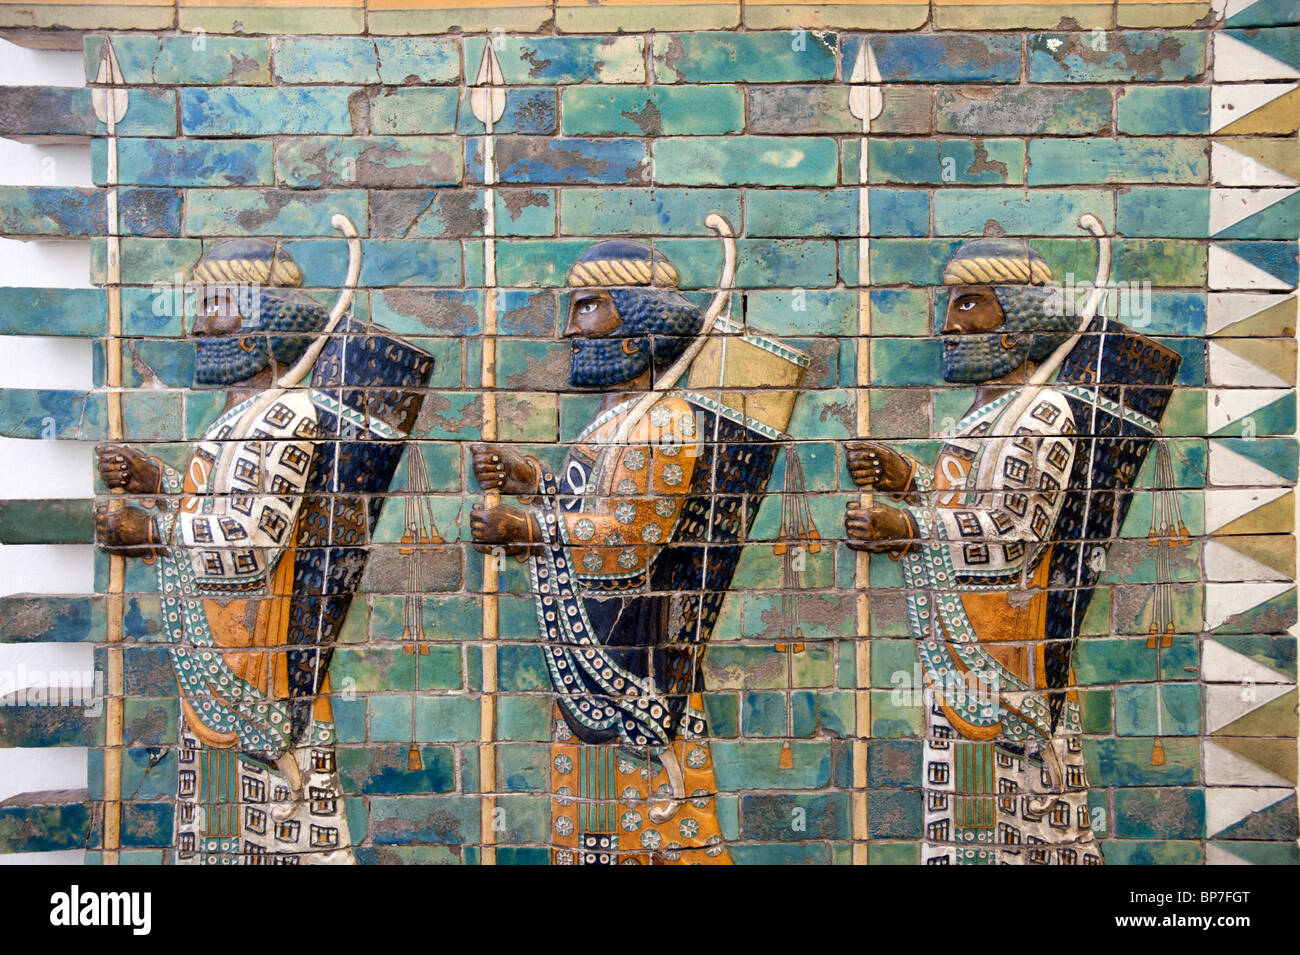 Les carreaux de couleur montrant un garde du corps royal du palais de Darrius I au Musée Pergamon de Berlin Allemagne Banque D'Images